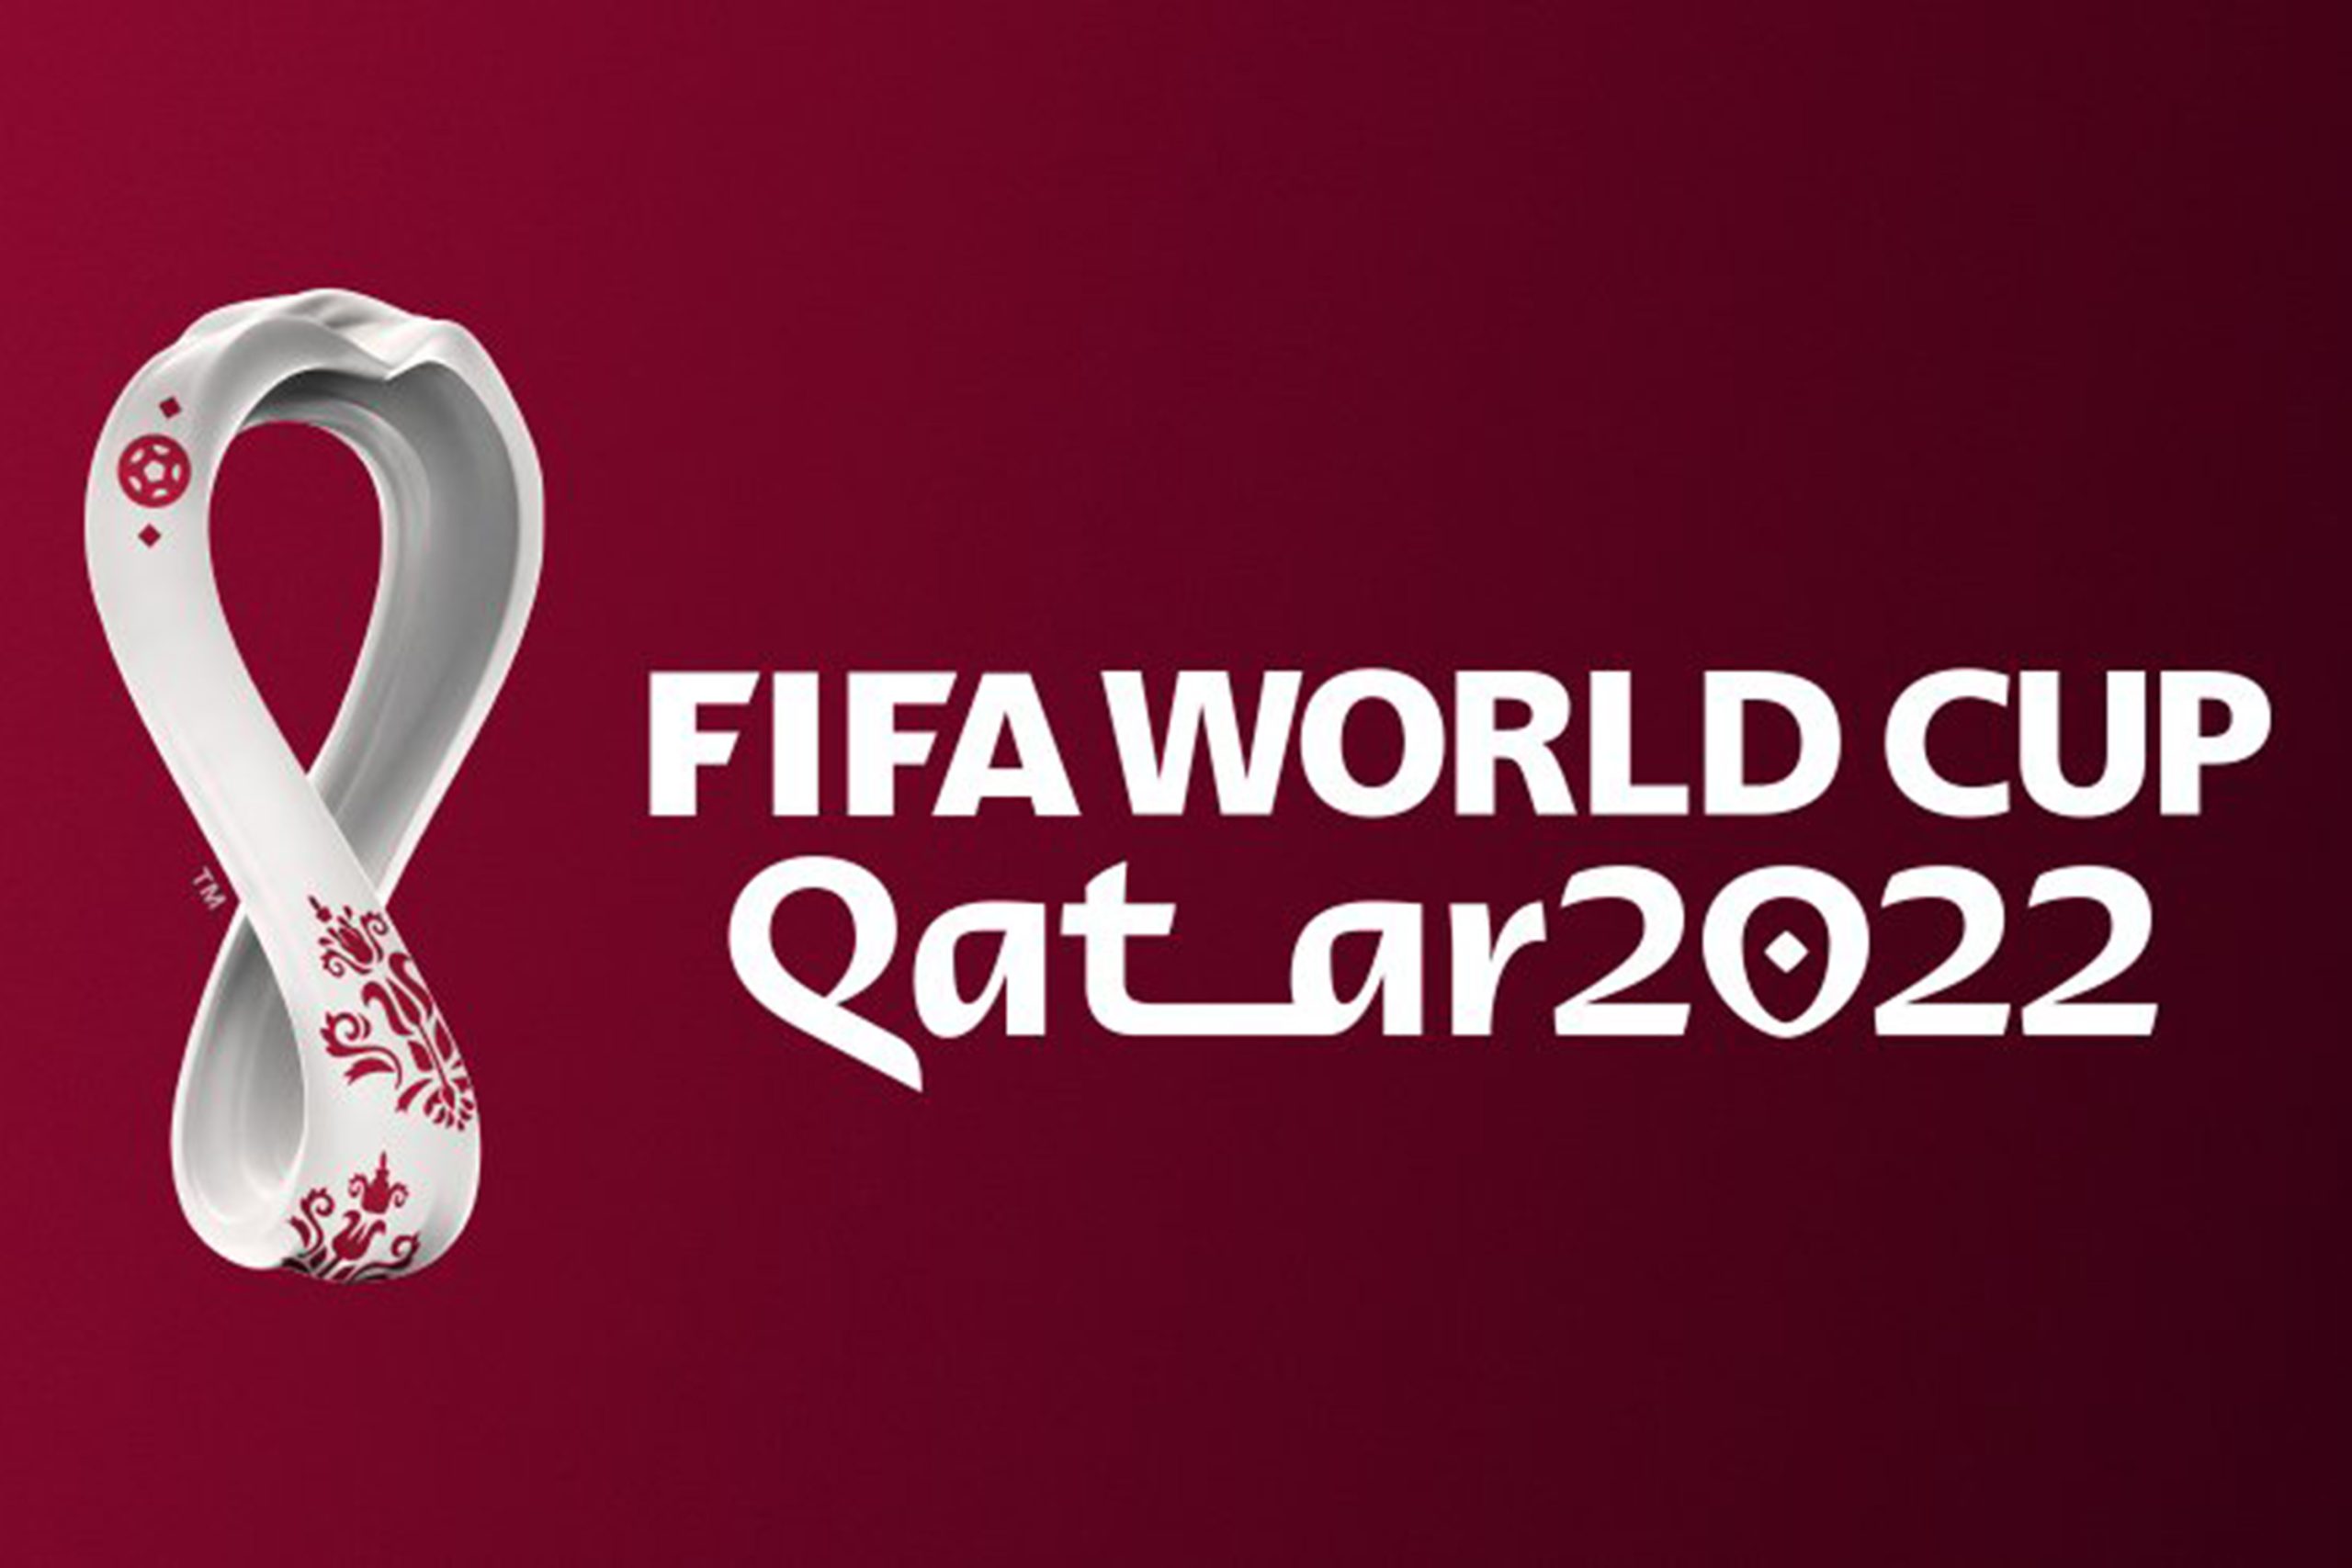 Como assistir a Copa do Mundo 2022 online, ao vivo e de graça? Descubra aqui!